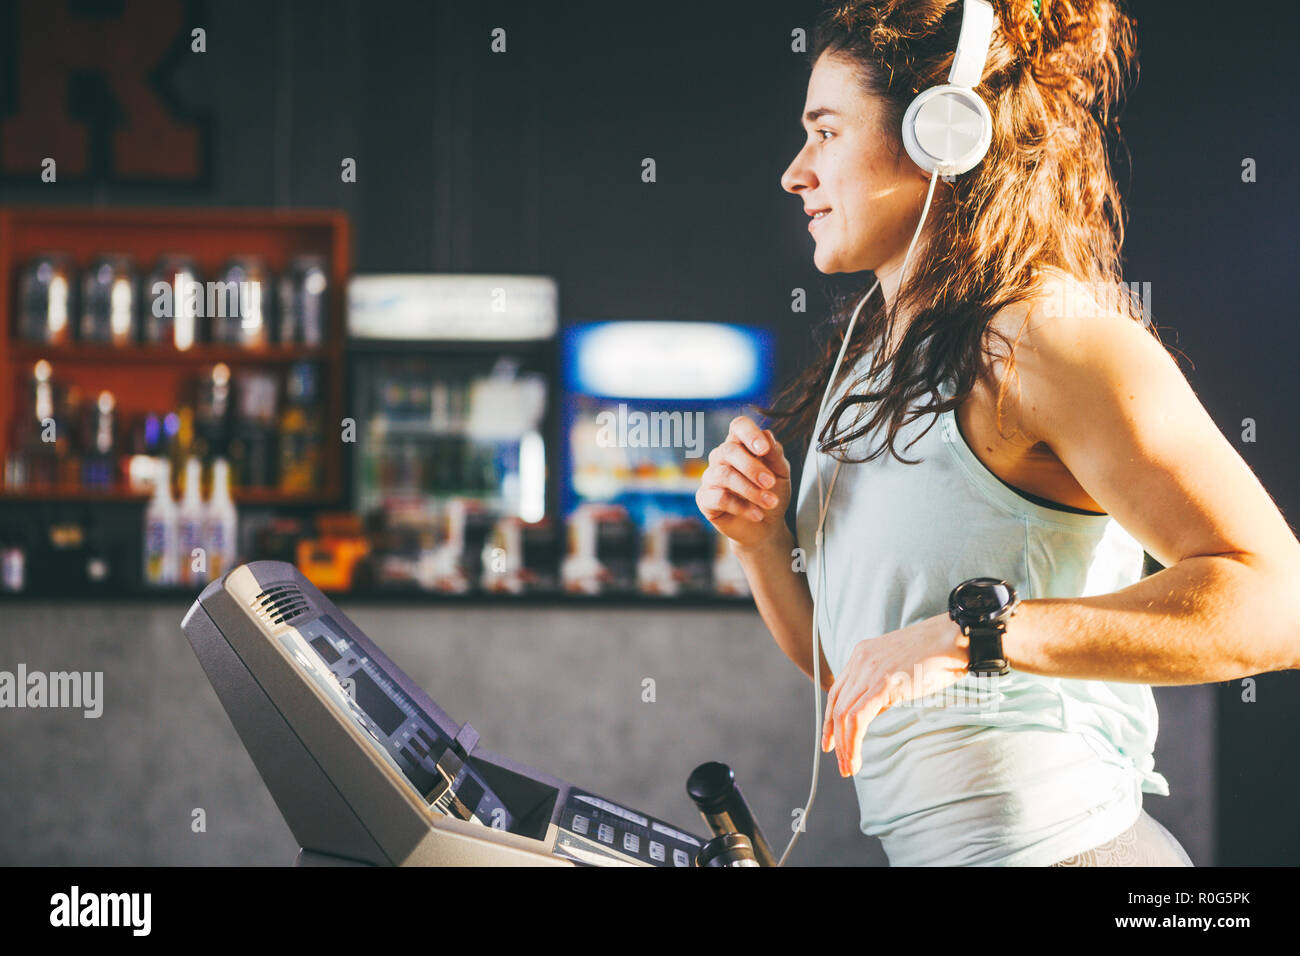 Thema ist Sport und Musik. Eine schöne aufgeblasen Frau läuft im  Fitnessstudio auf dem Laufband. Auf dem Kopf sind große weiße Kopfhörer,  das Mädchen Musik hört, d Stockfotografie - Alamy